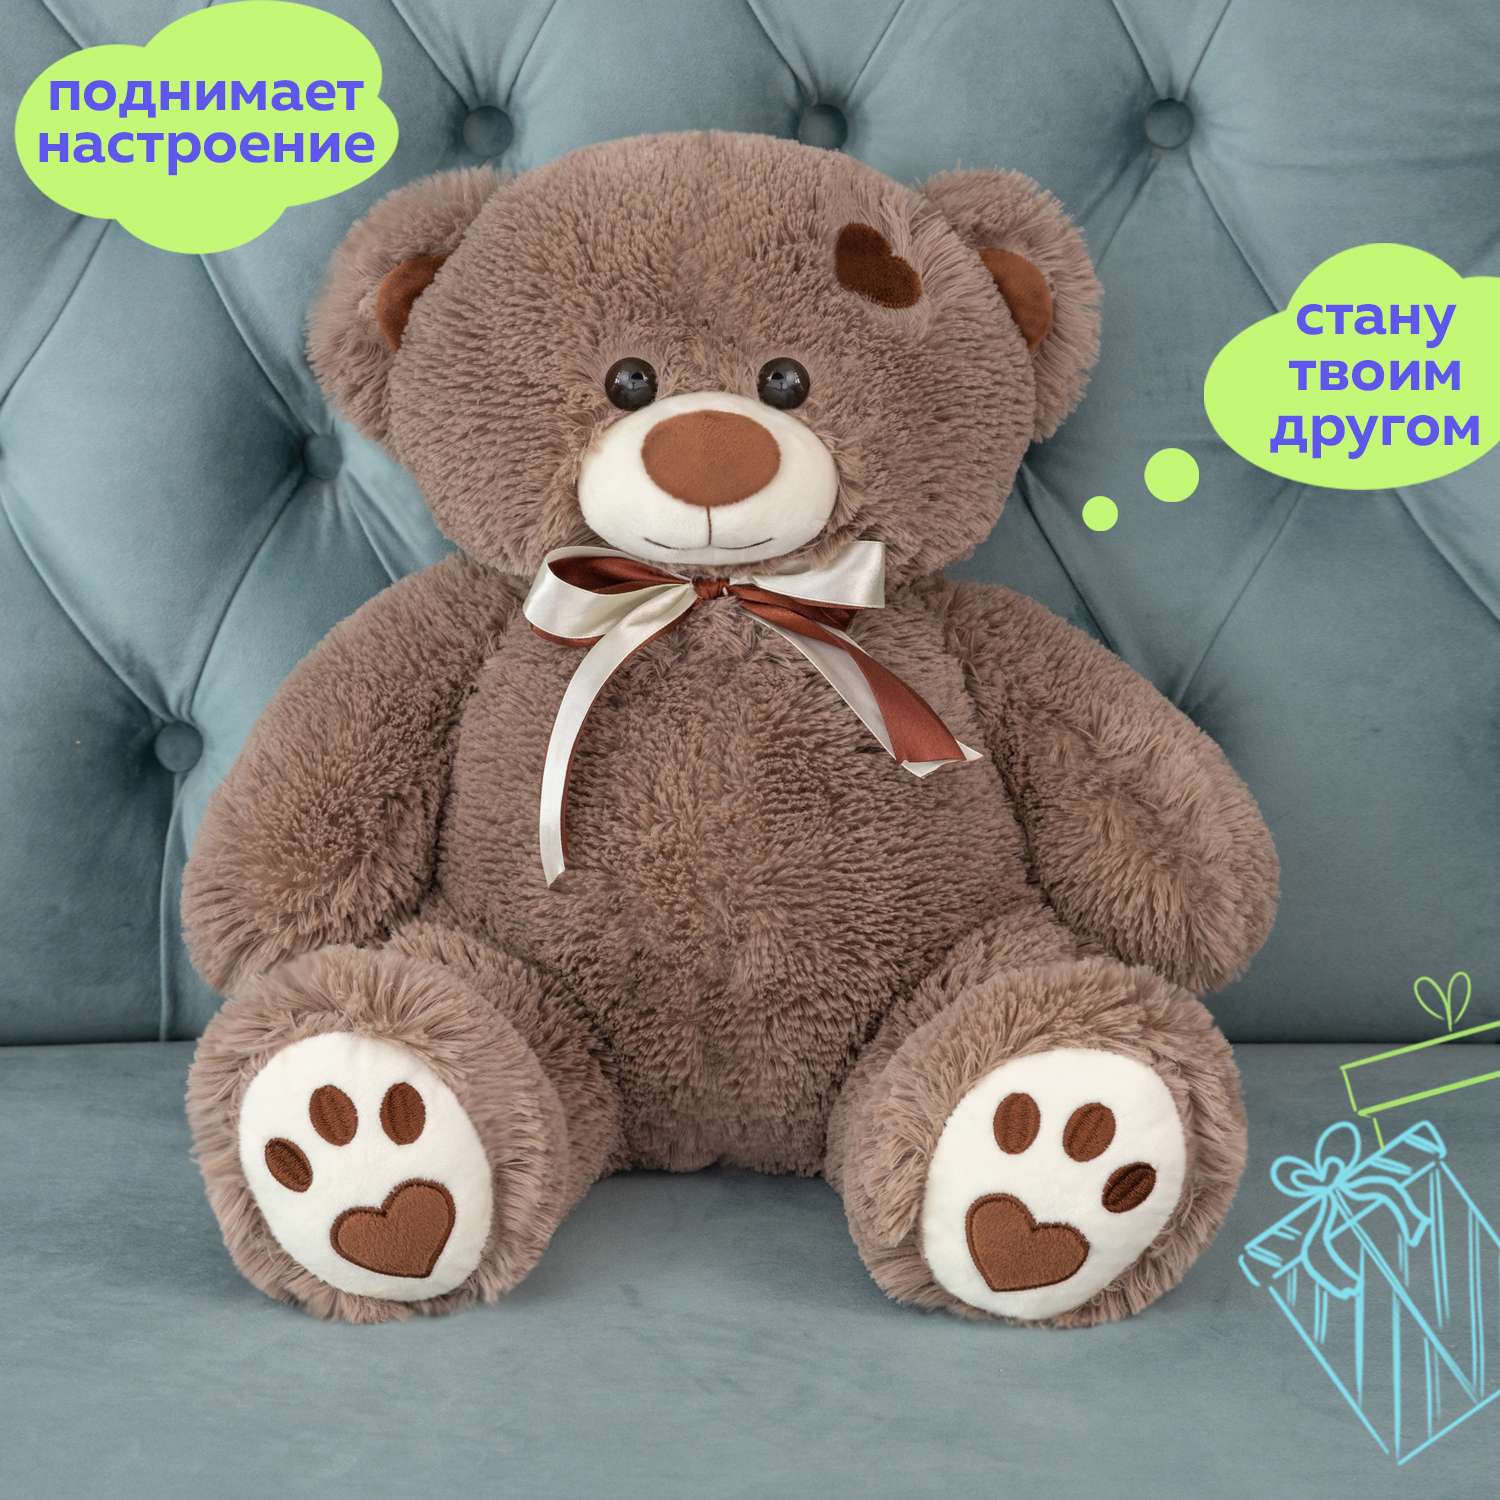 Мягкая игрушка Мягкие игрушки БелайТойс Плюшевый медведь Тони 65 см цвет бурый - фото 4